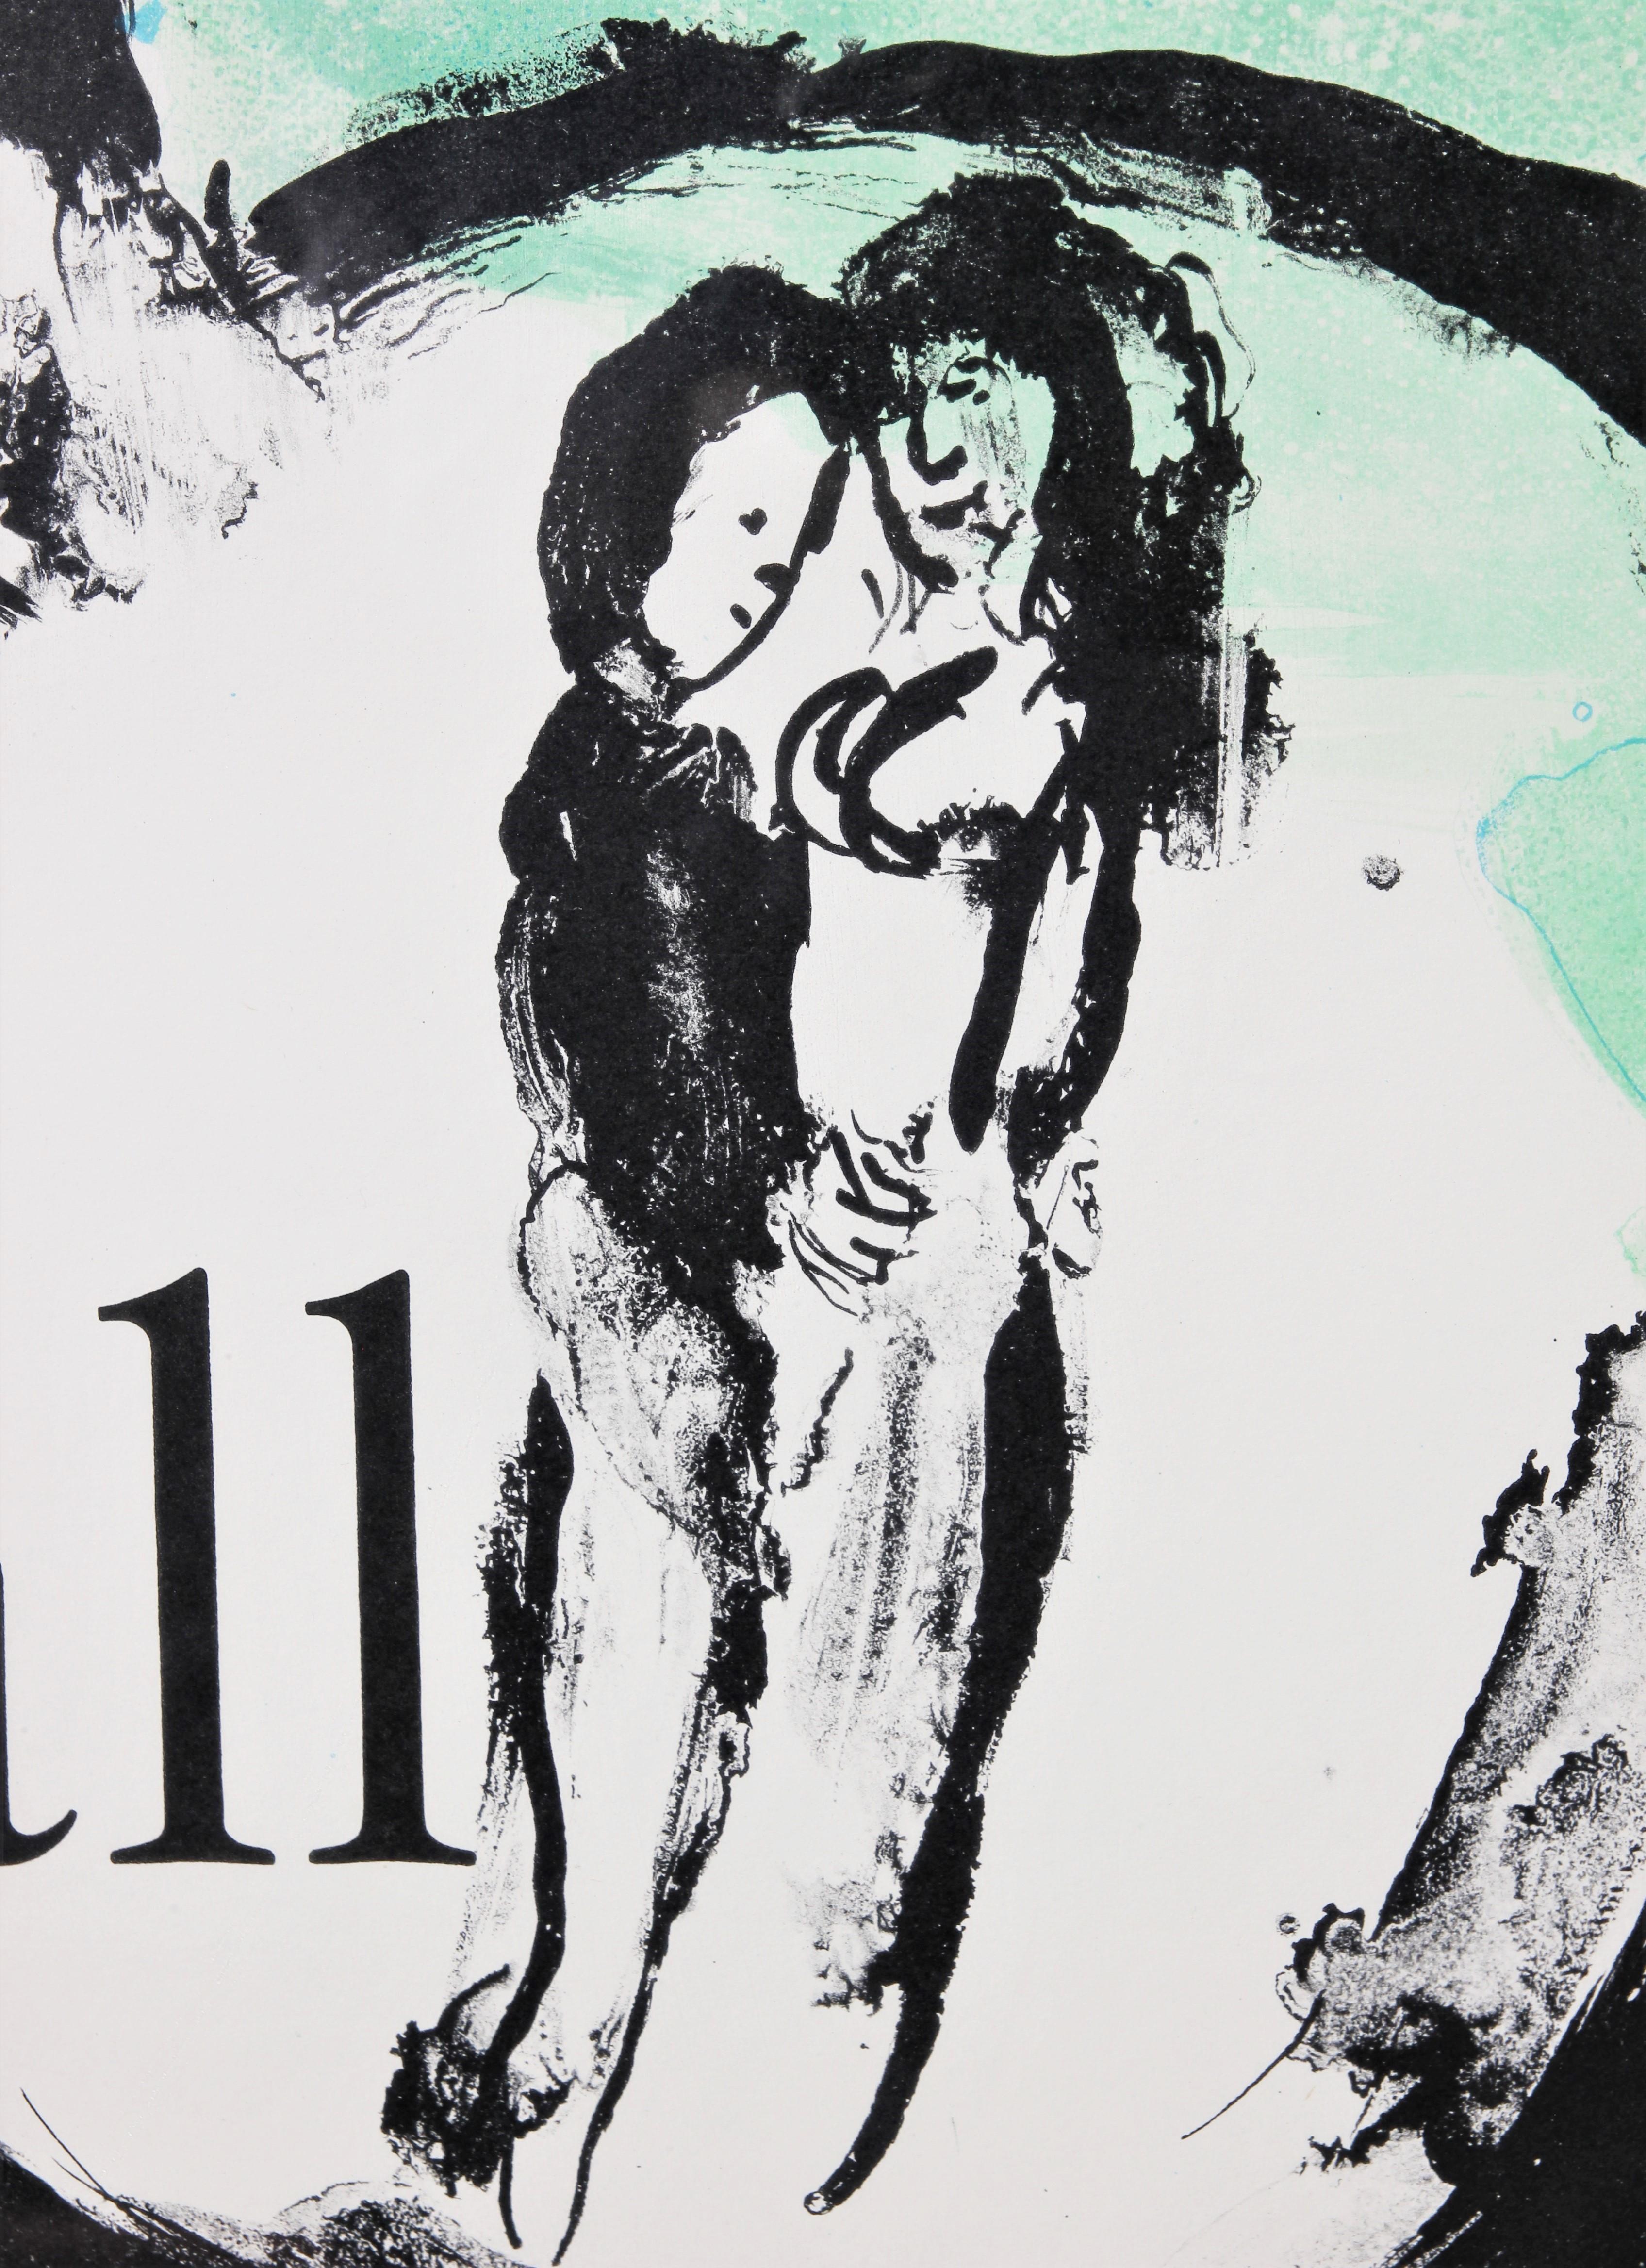 Ein lithografiertes Plakat auf Papier von 1962 nach einem Werk des berühmten russisch-französischen Expressionisten Marc Chagall mit dem Titel 